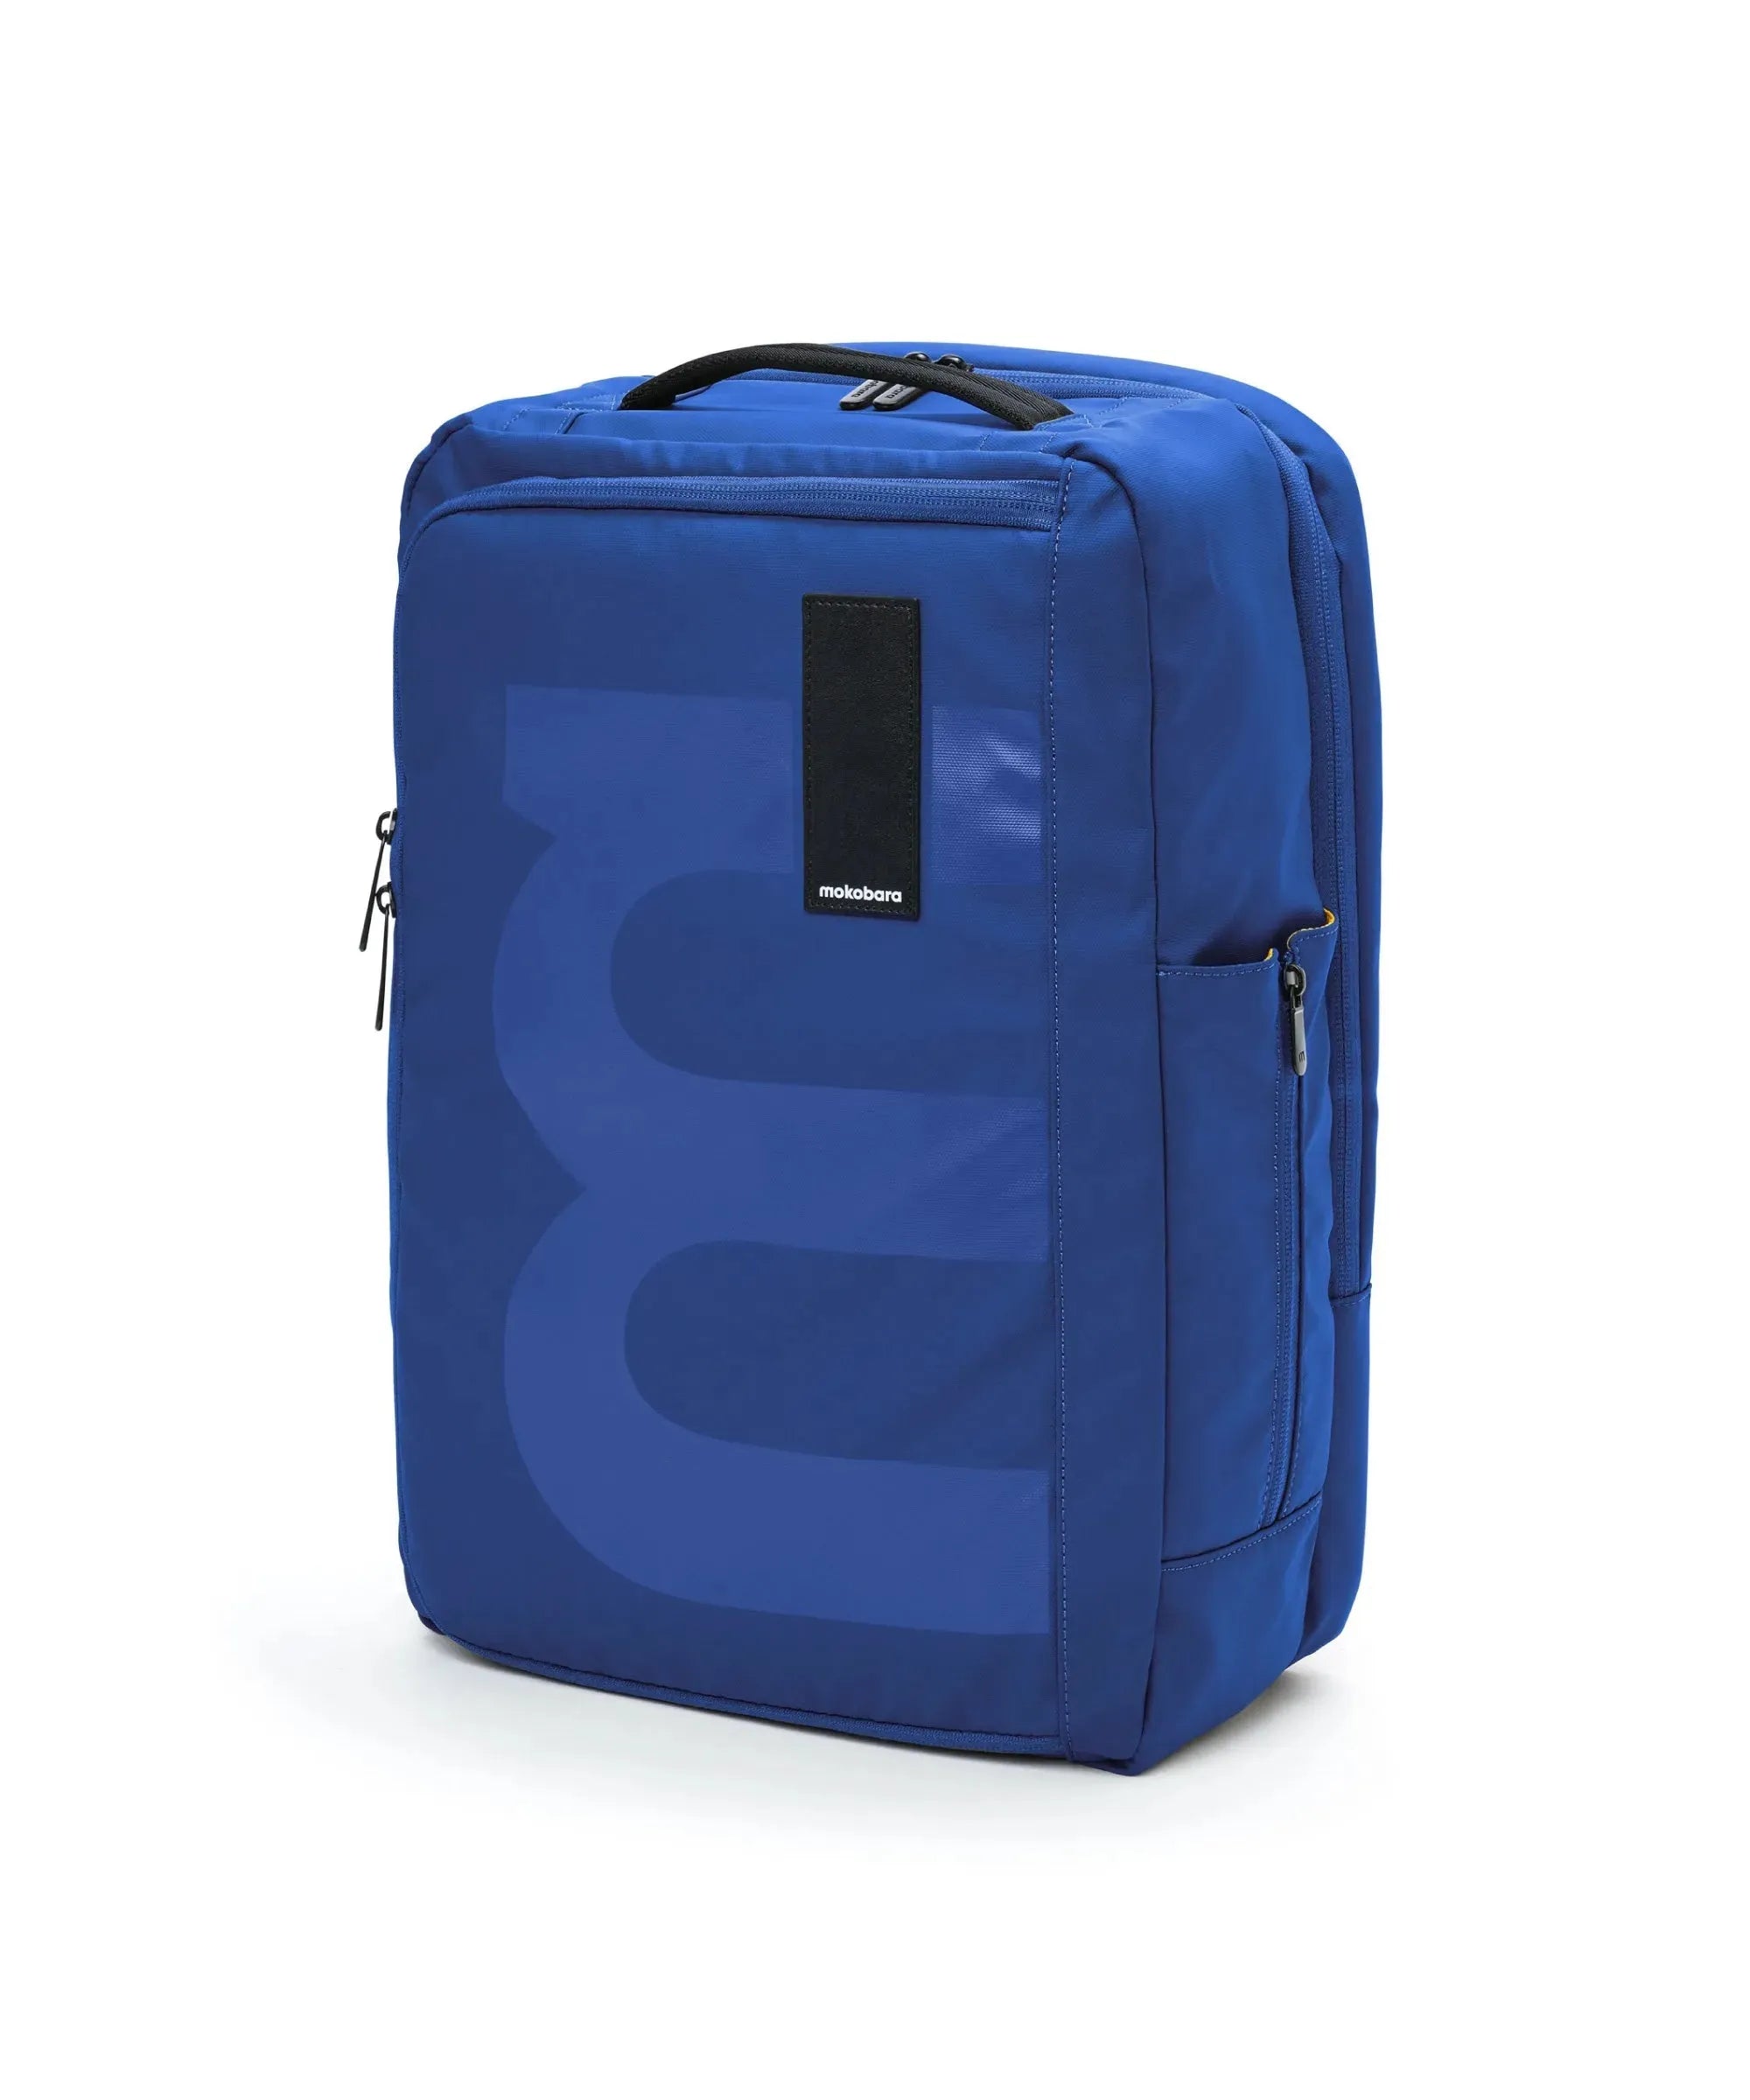 Color_Ocean | The Em Travel Backpack - 32L